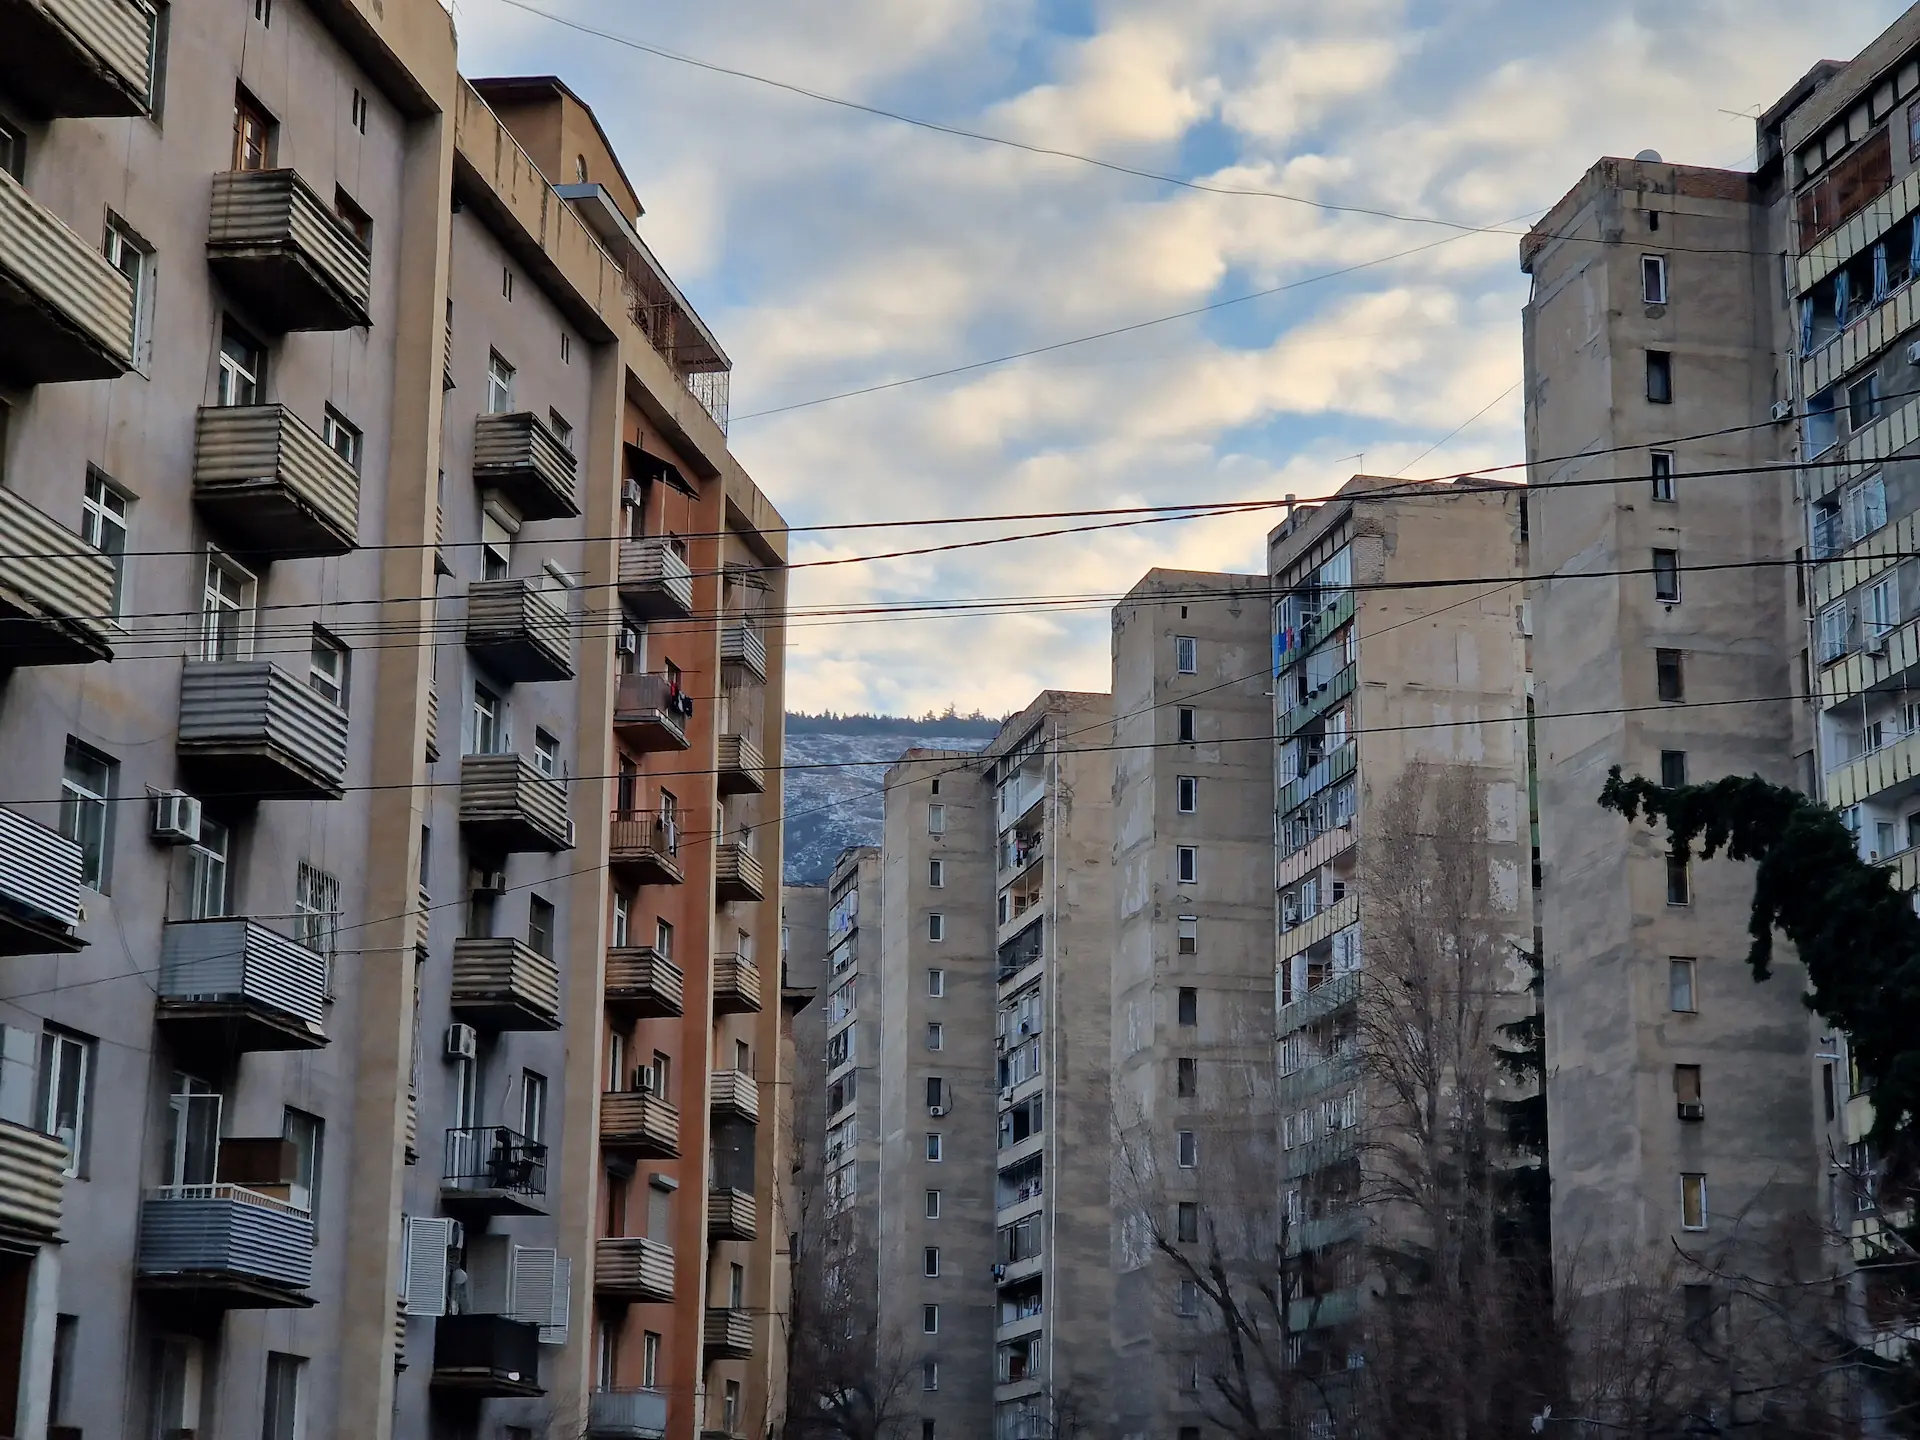 Un bloc de bâtiments soviétiques, avec une vue sur les montagnes en fond.